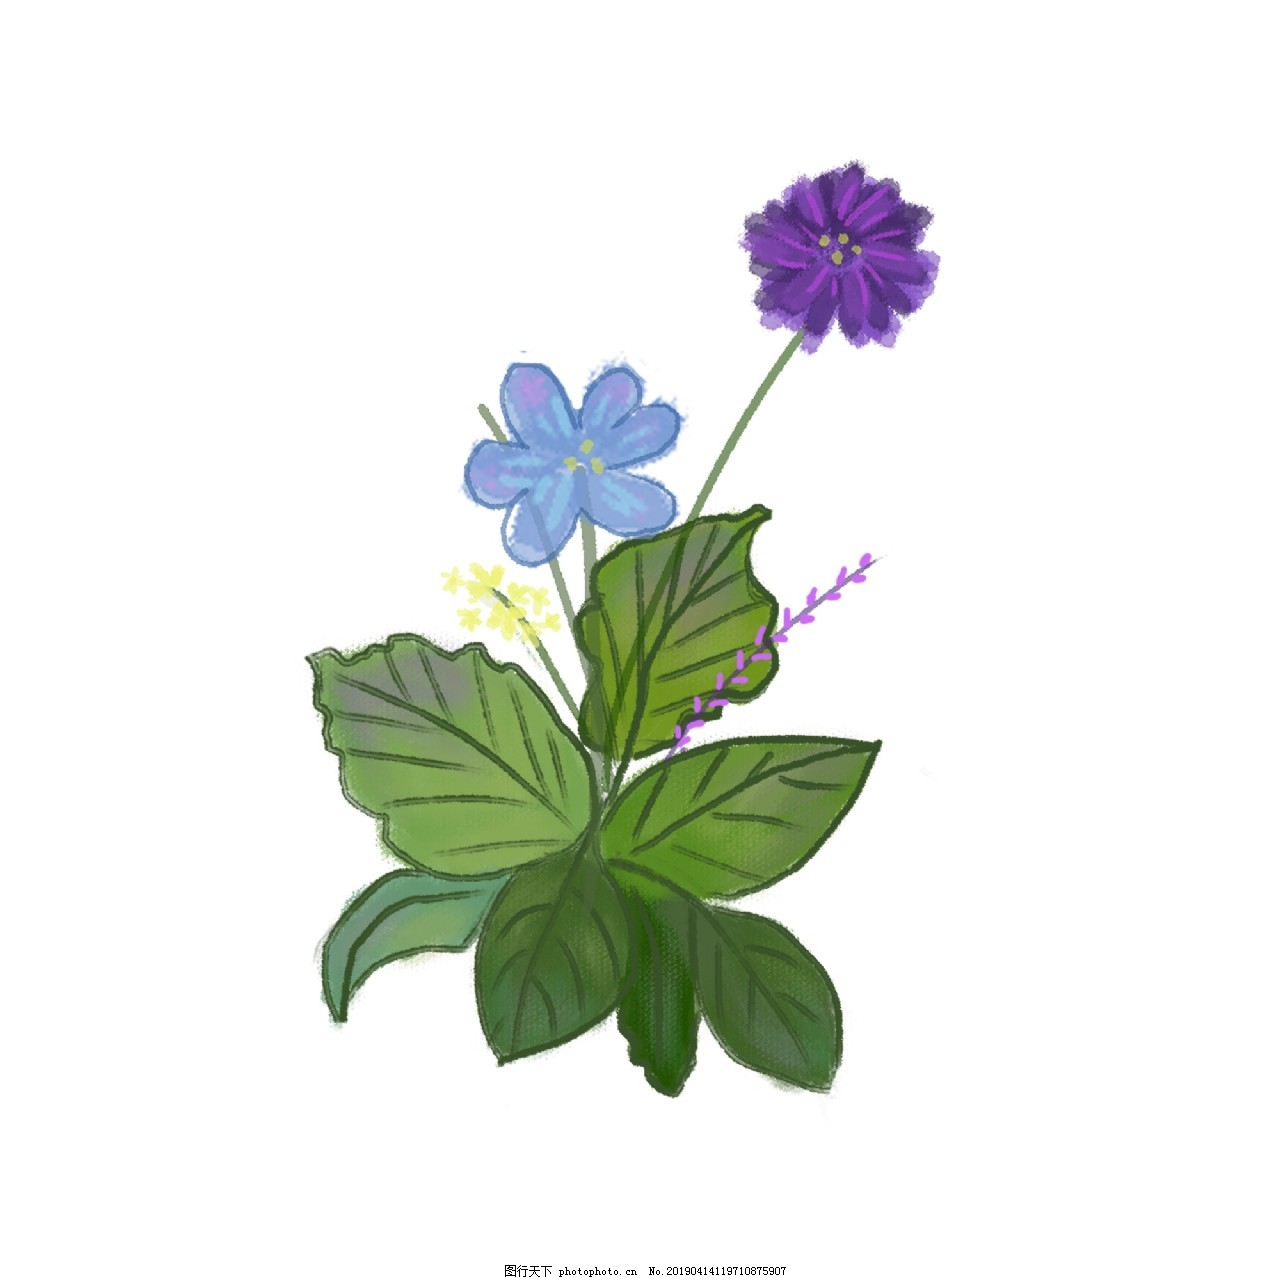 ‘~小清新的蓝紫色花朵图片_装饰图案_平面创作元素-  ~’ 的图片